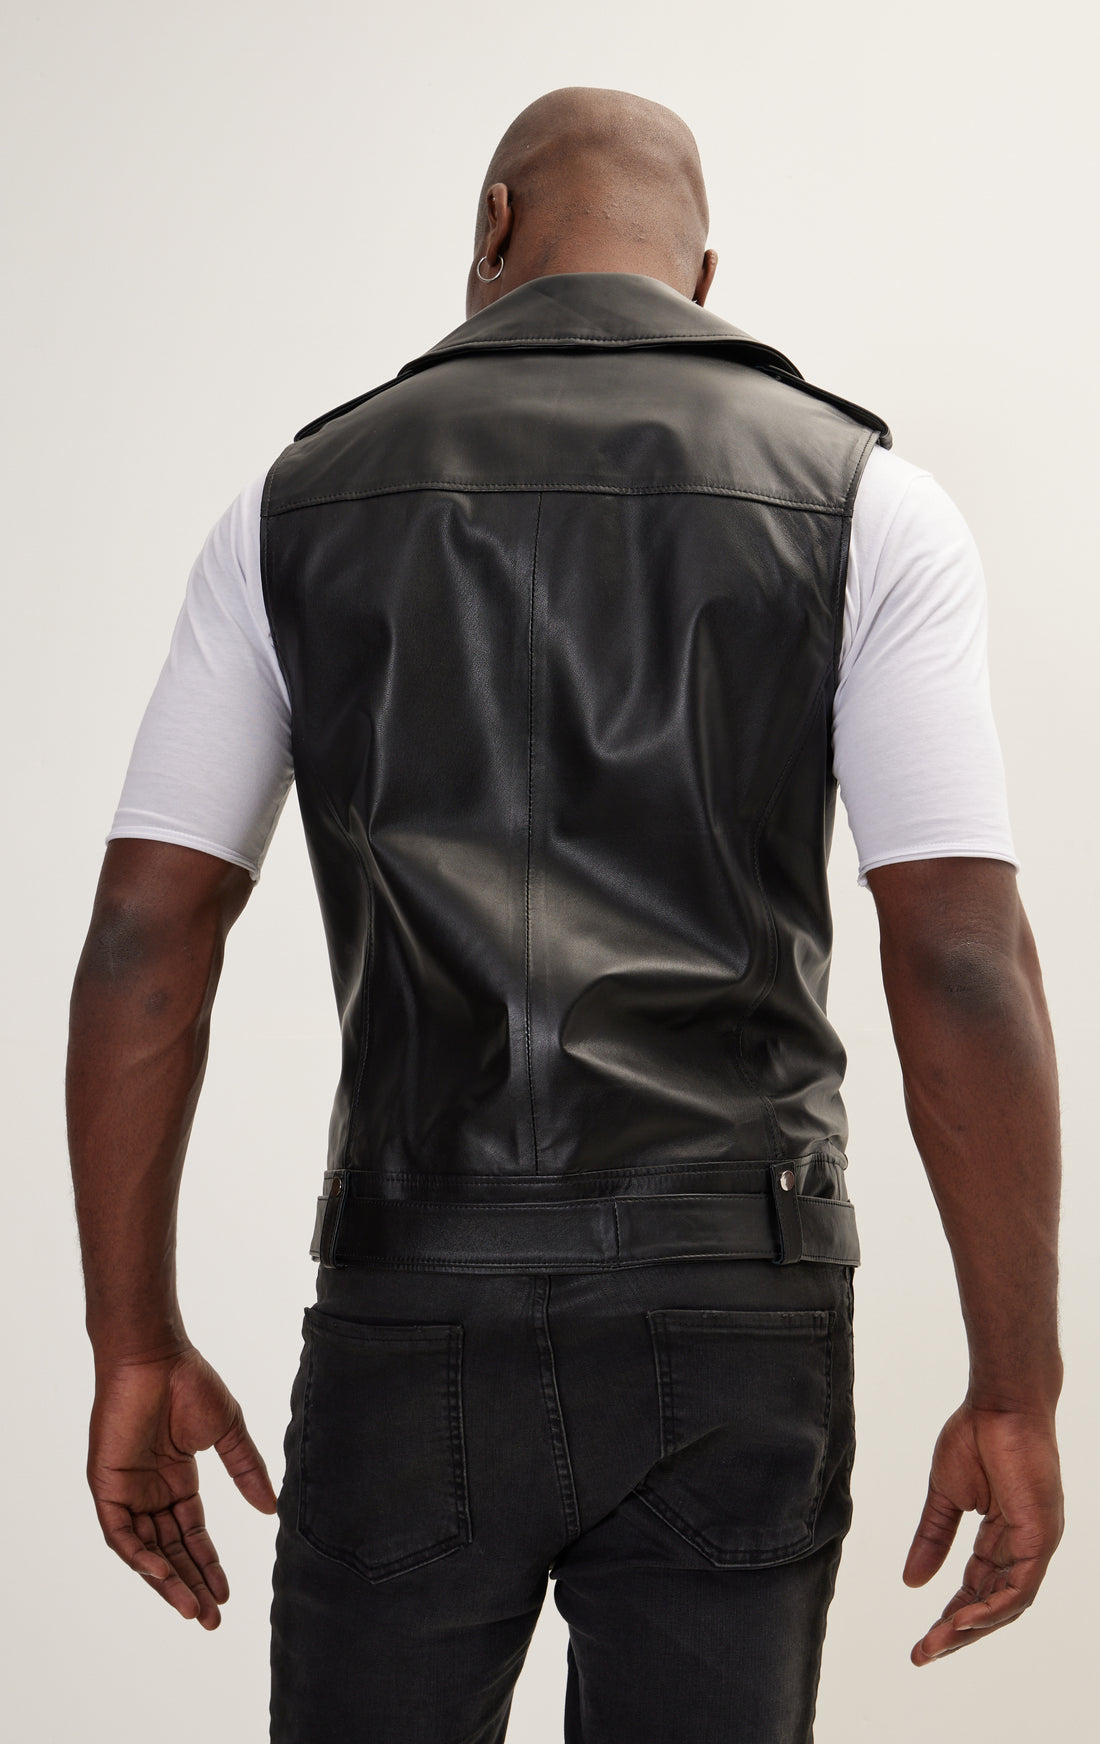 The Asymmetric Zipper Closure Leather Vest - Black